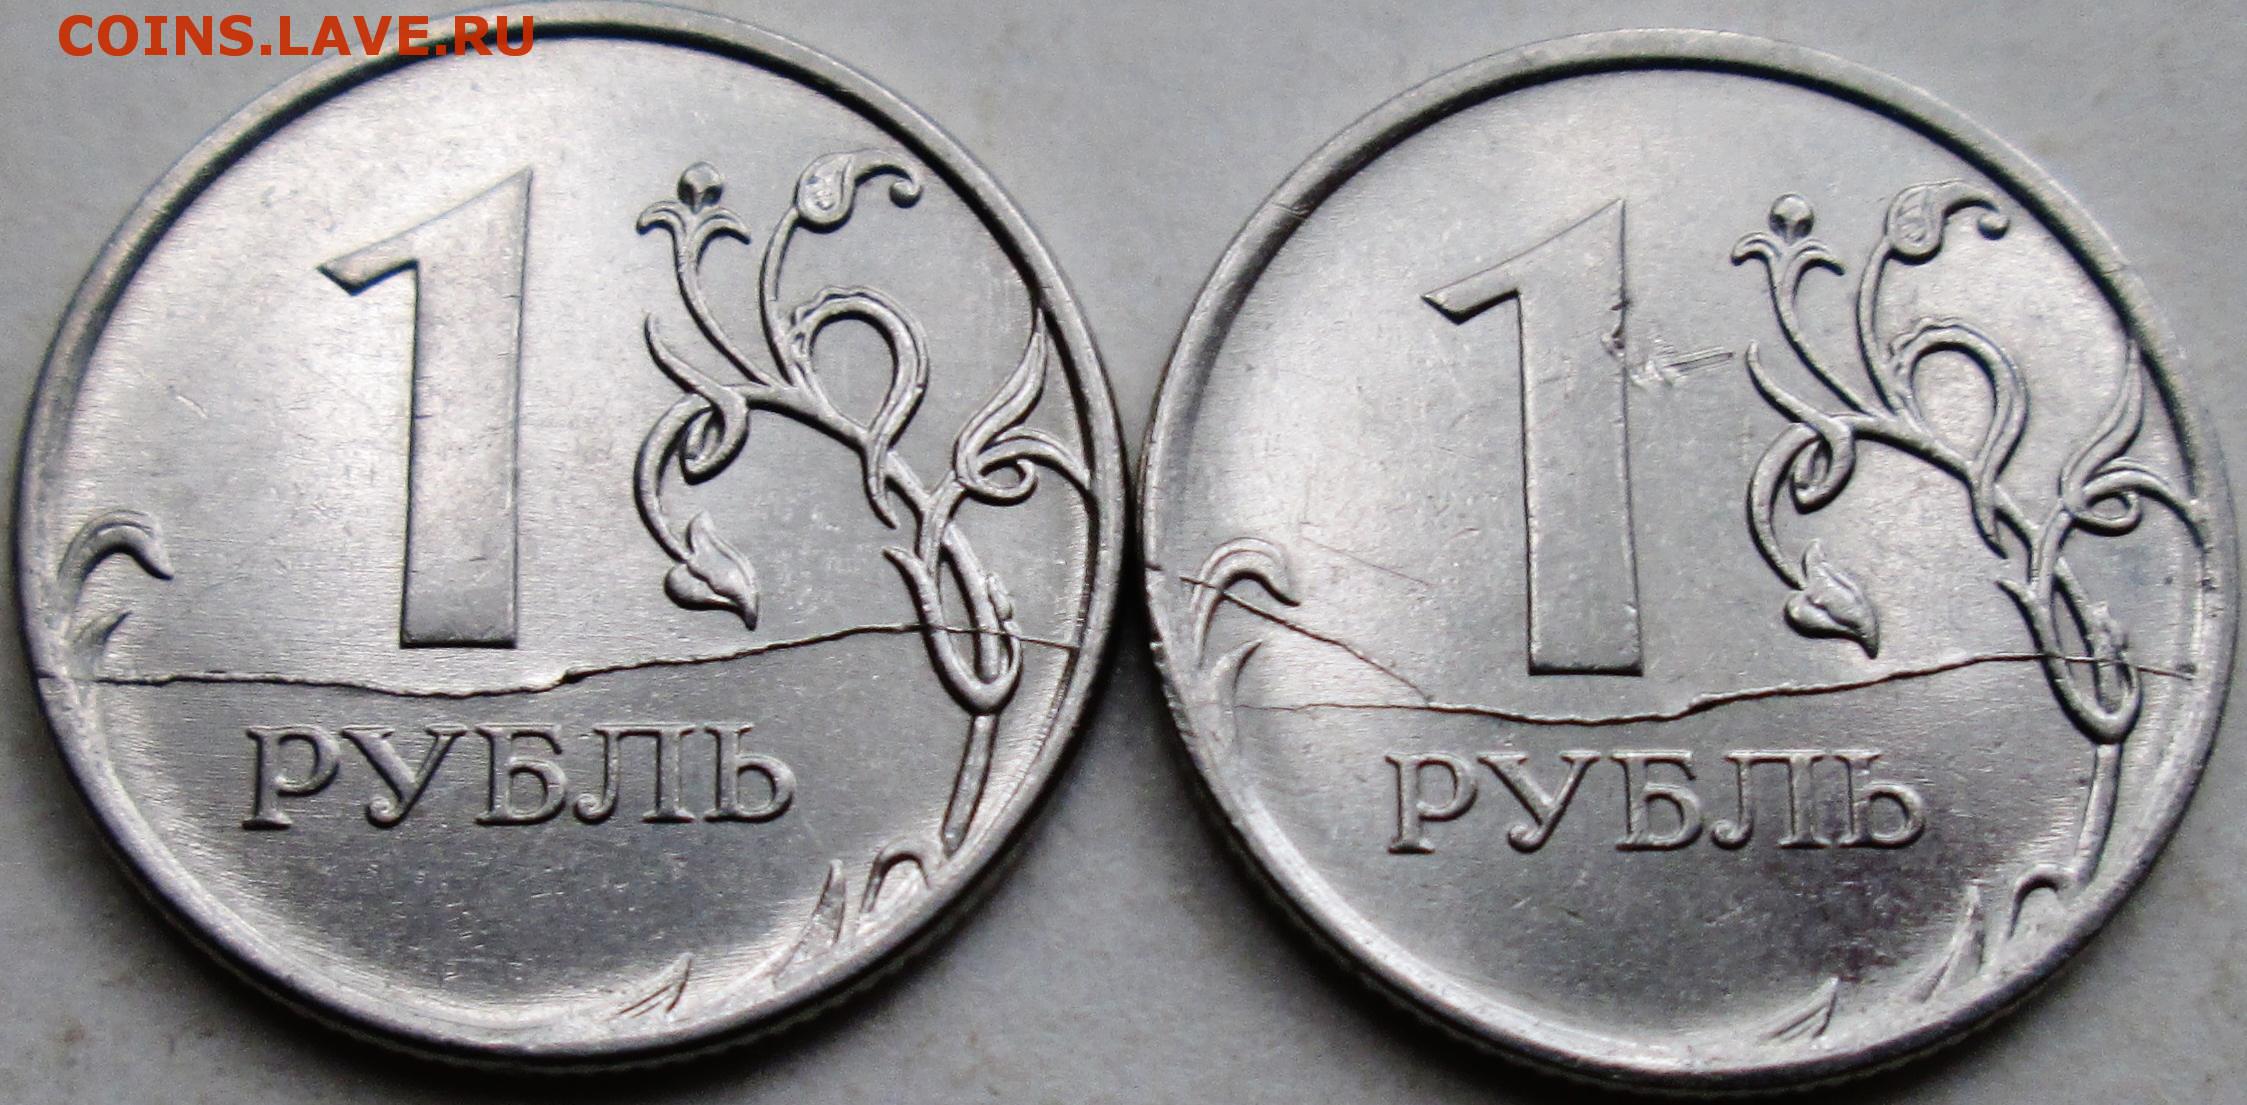 Первых 2 штук. Реверс монеты два €. 1 Рубль 2011. Реверс рубля фото. Монета с отслоившимся реверсом.